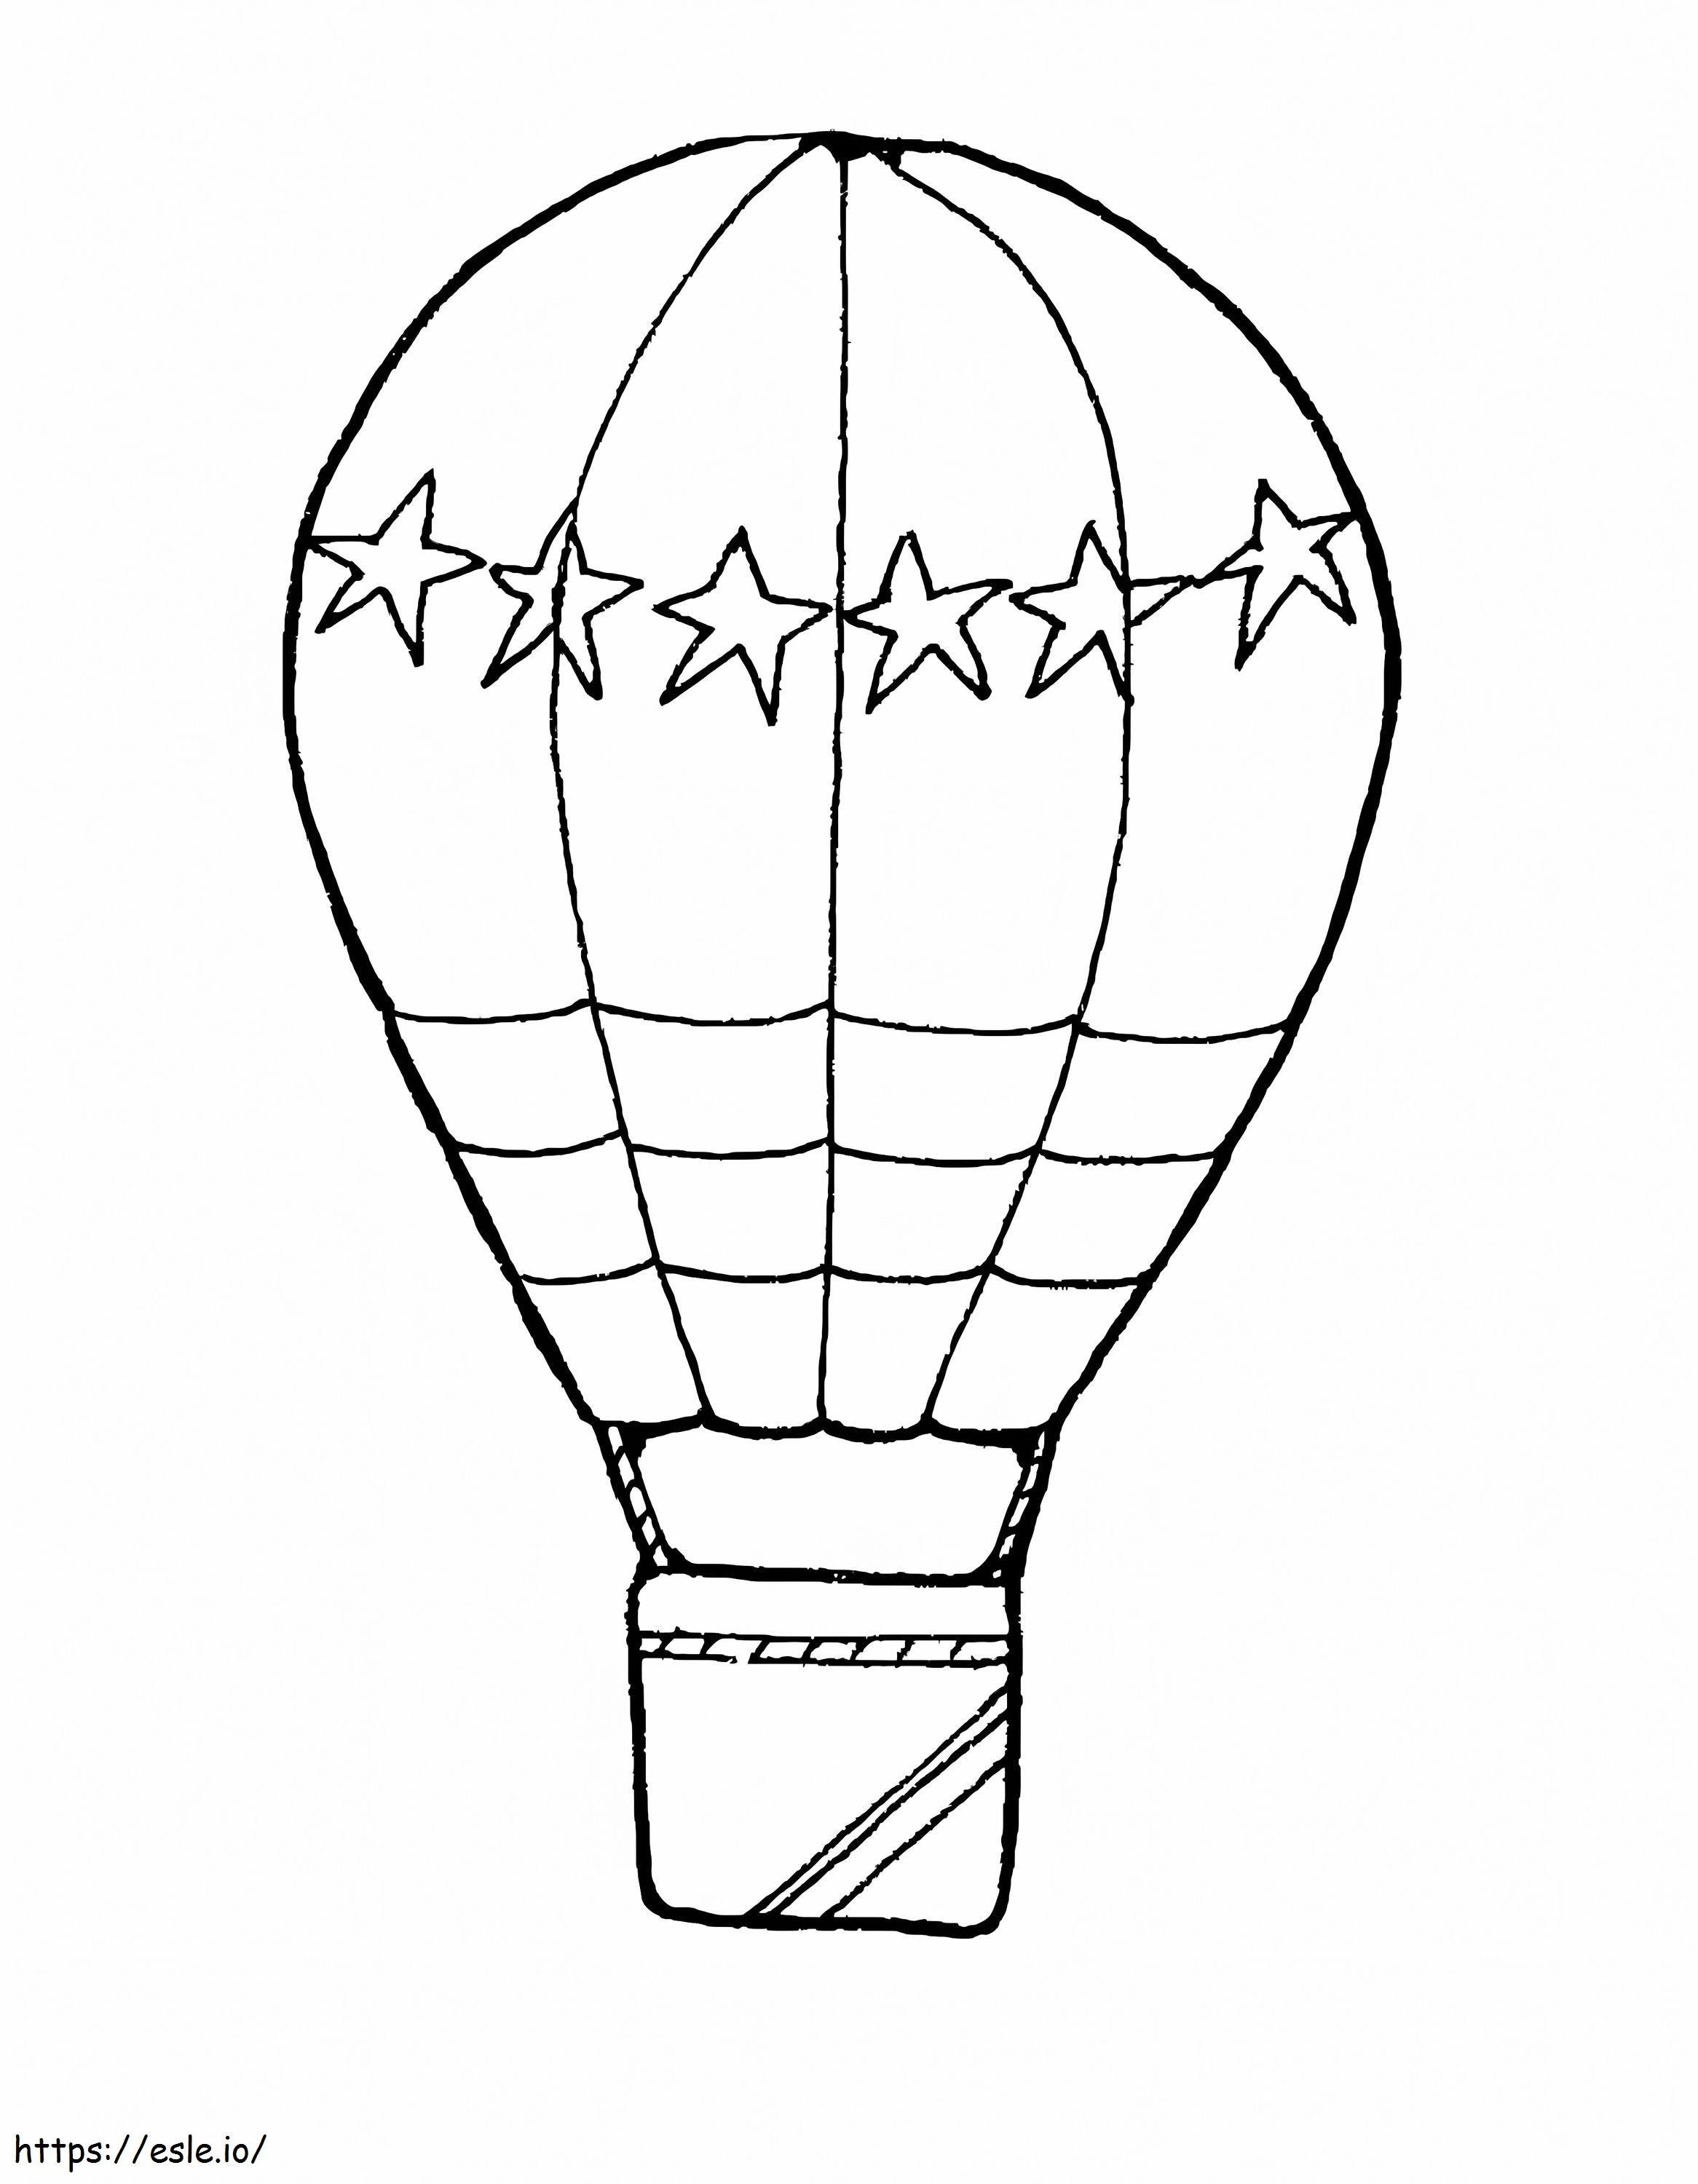 Desenho de balão de ar quente para colorir